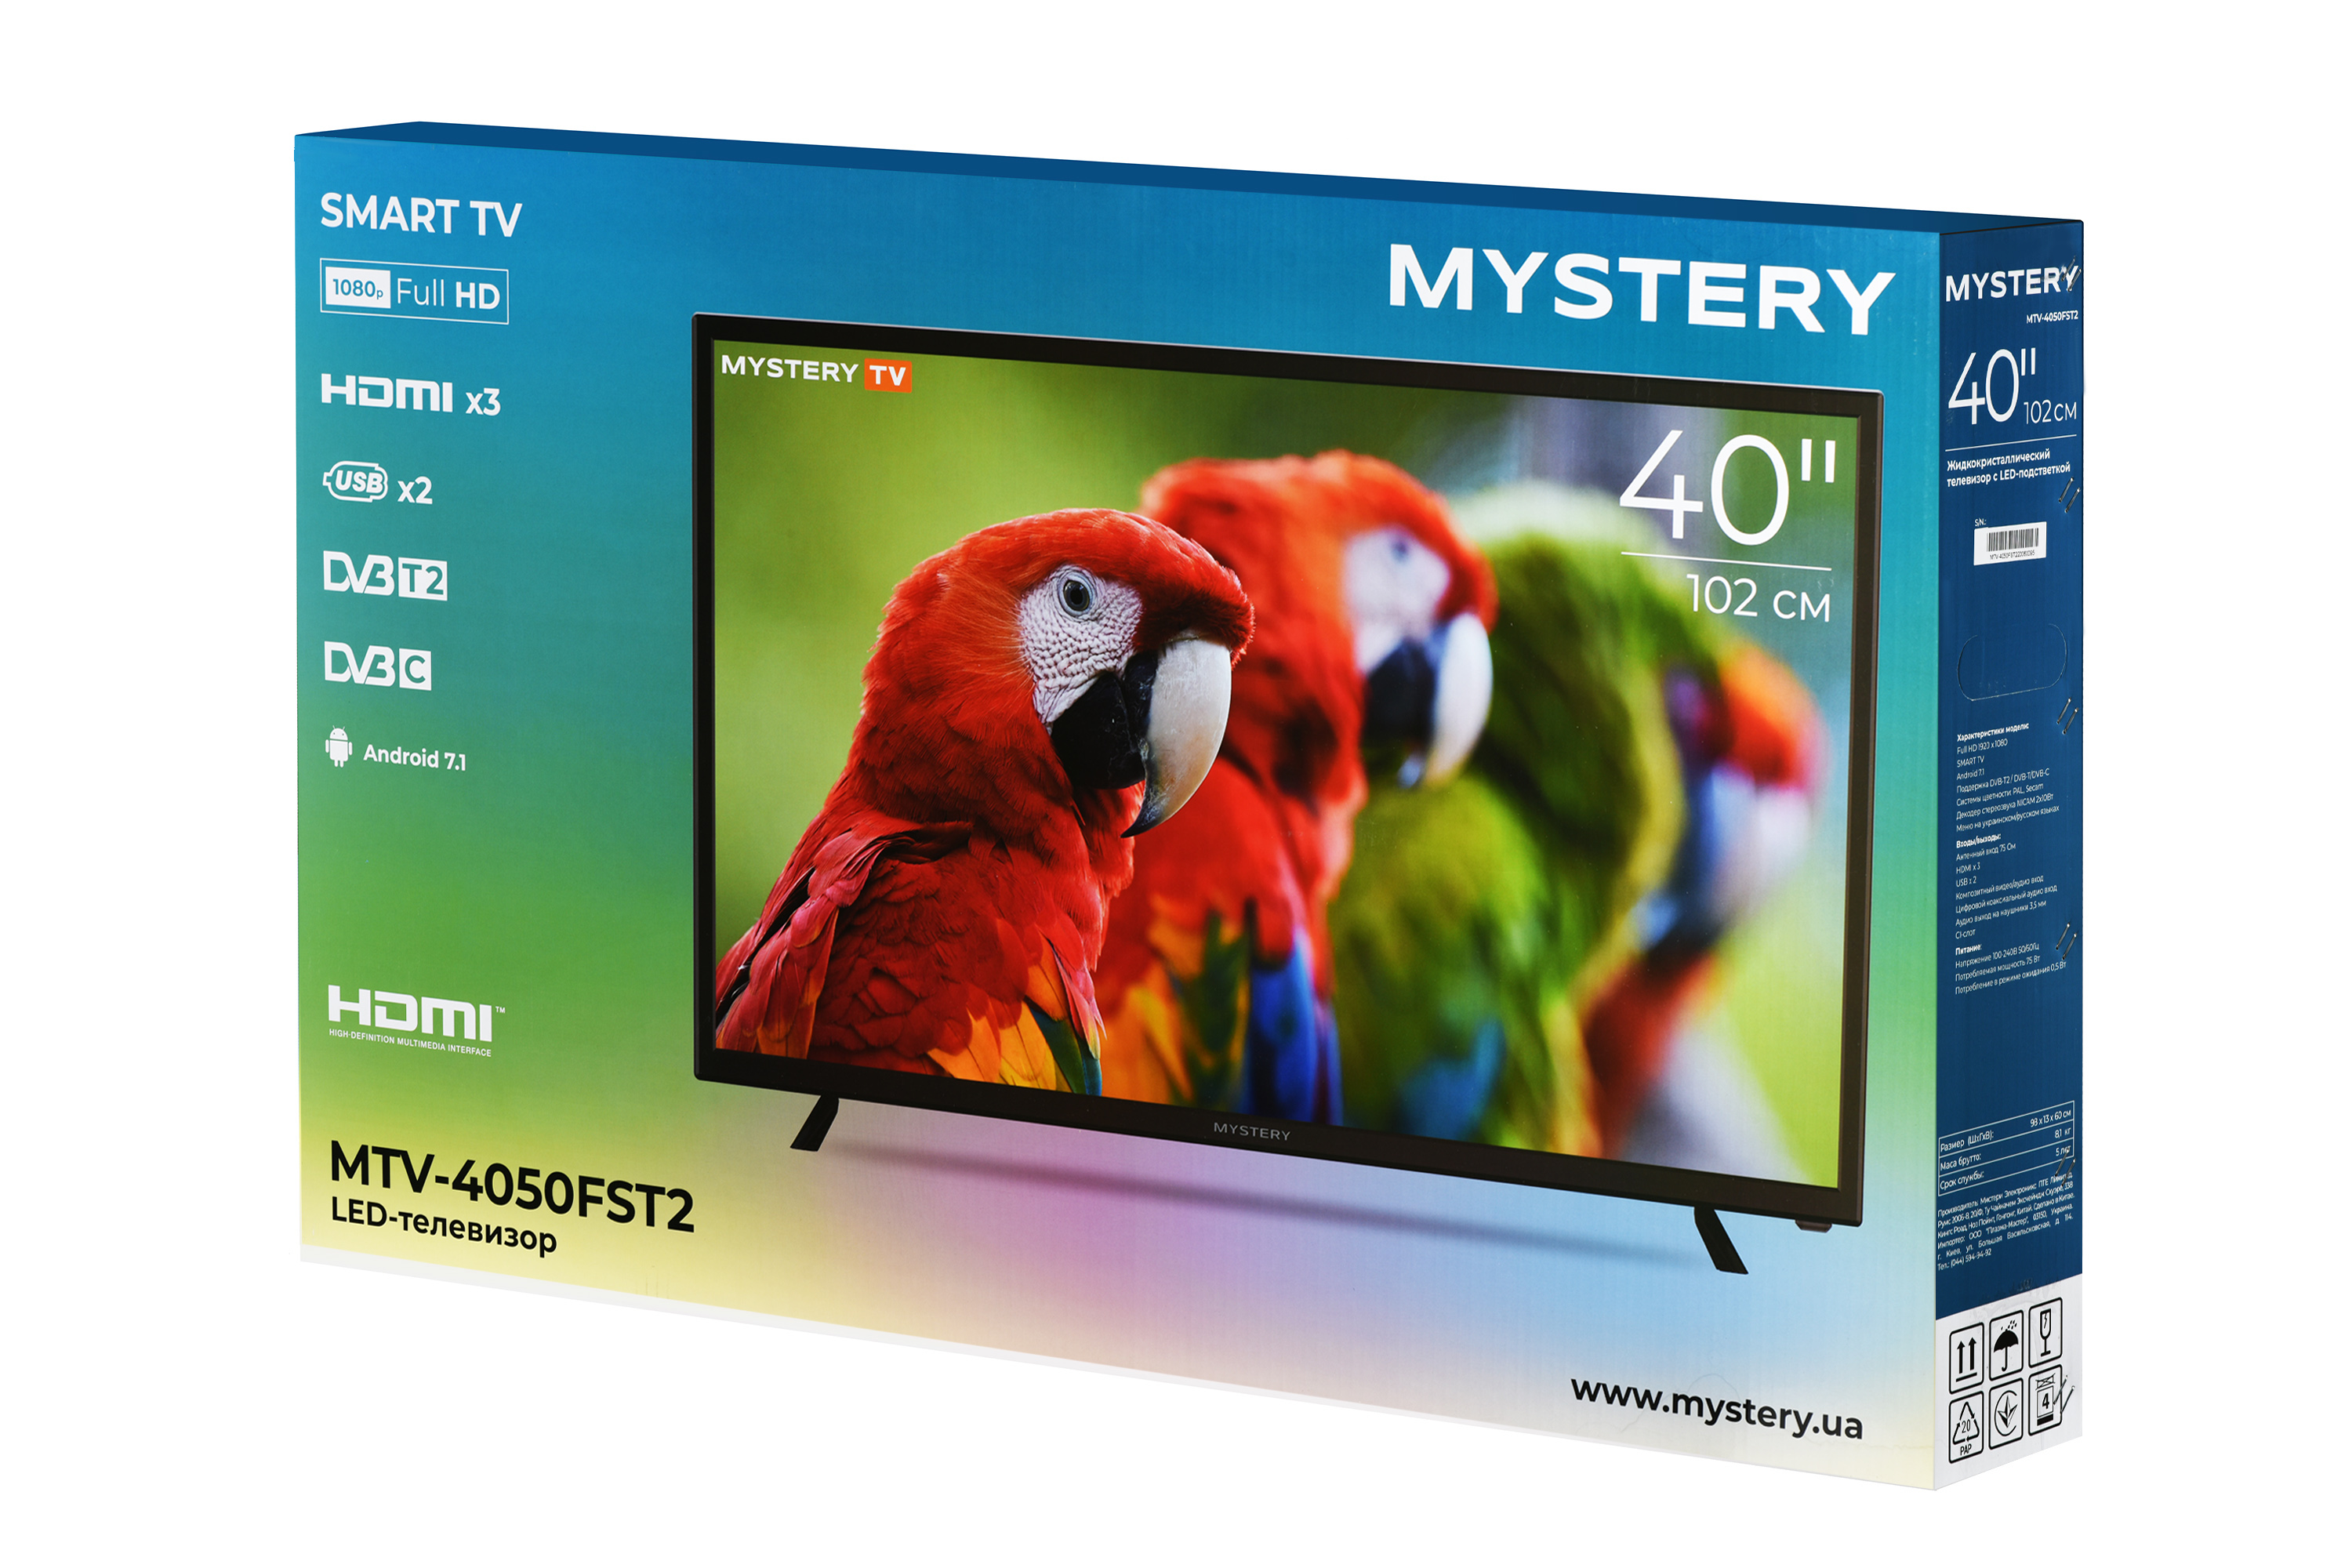 Smart-телевізор Mystery MTV-4050FST2